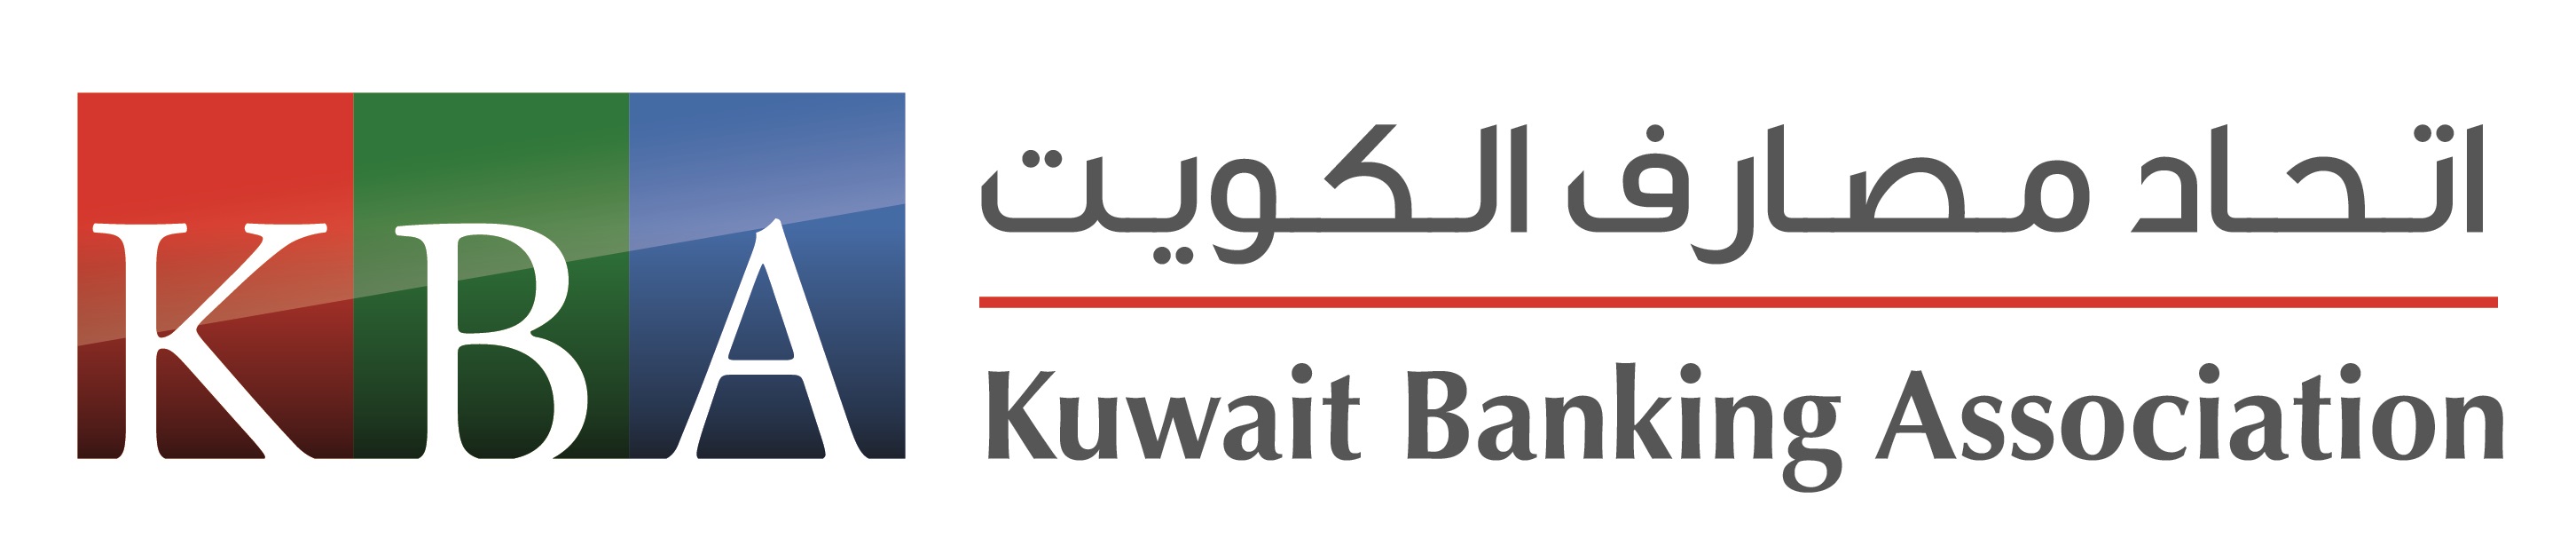 اتحاد مصارف الكويت يعطل عمل البنوك غدا احترازيا لتقلبات الطقس 